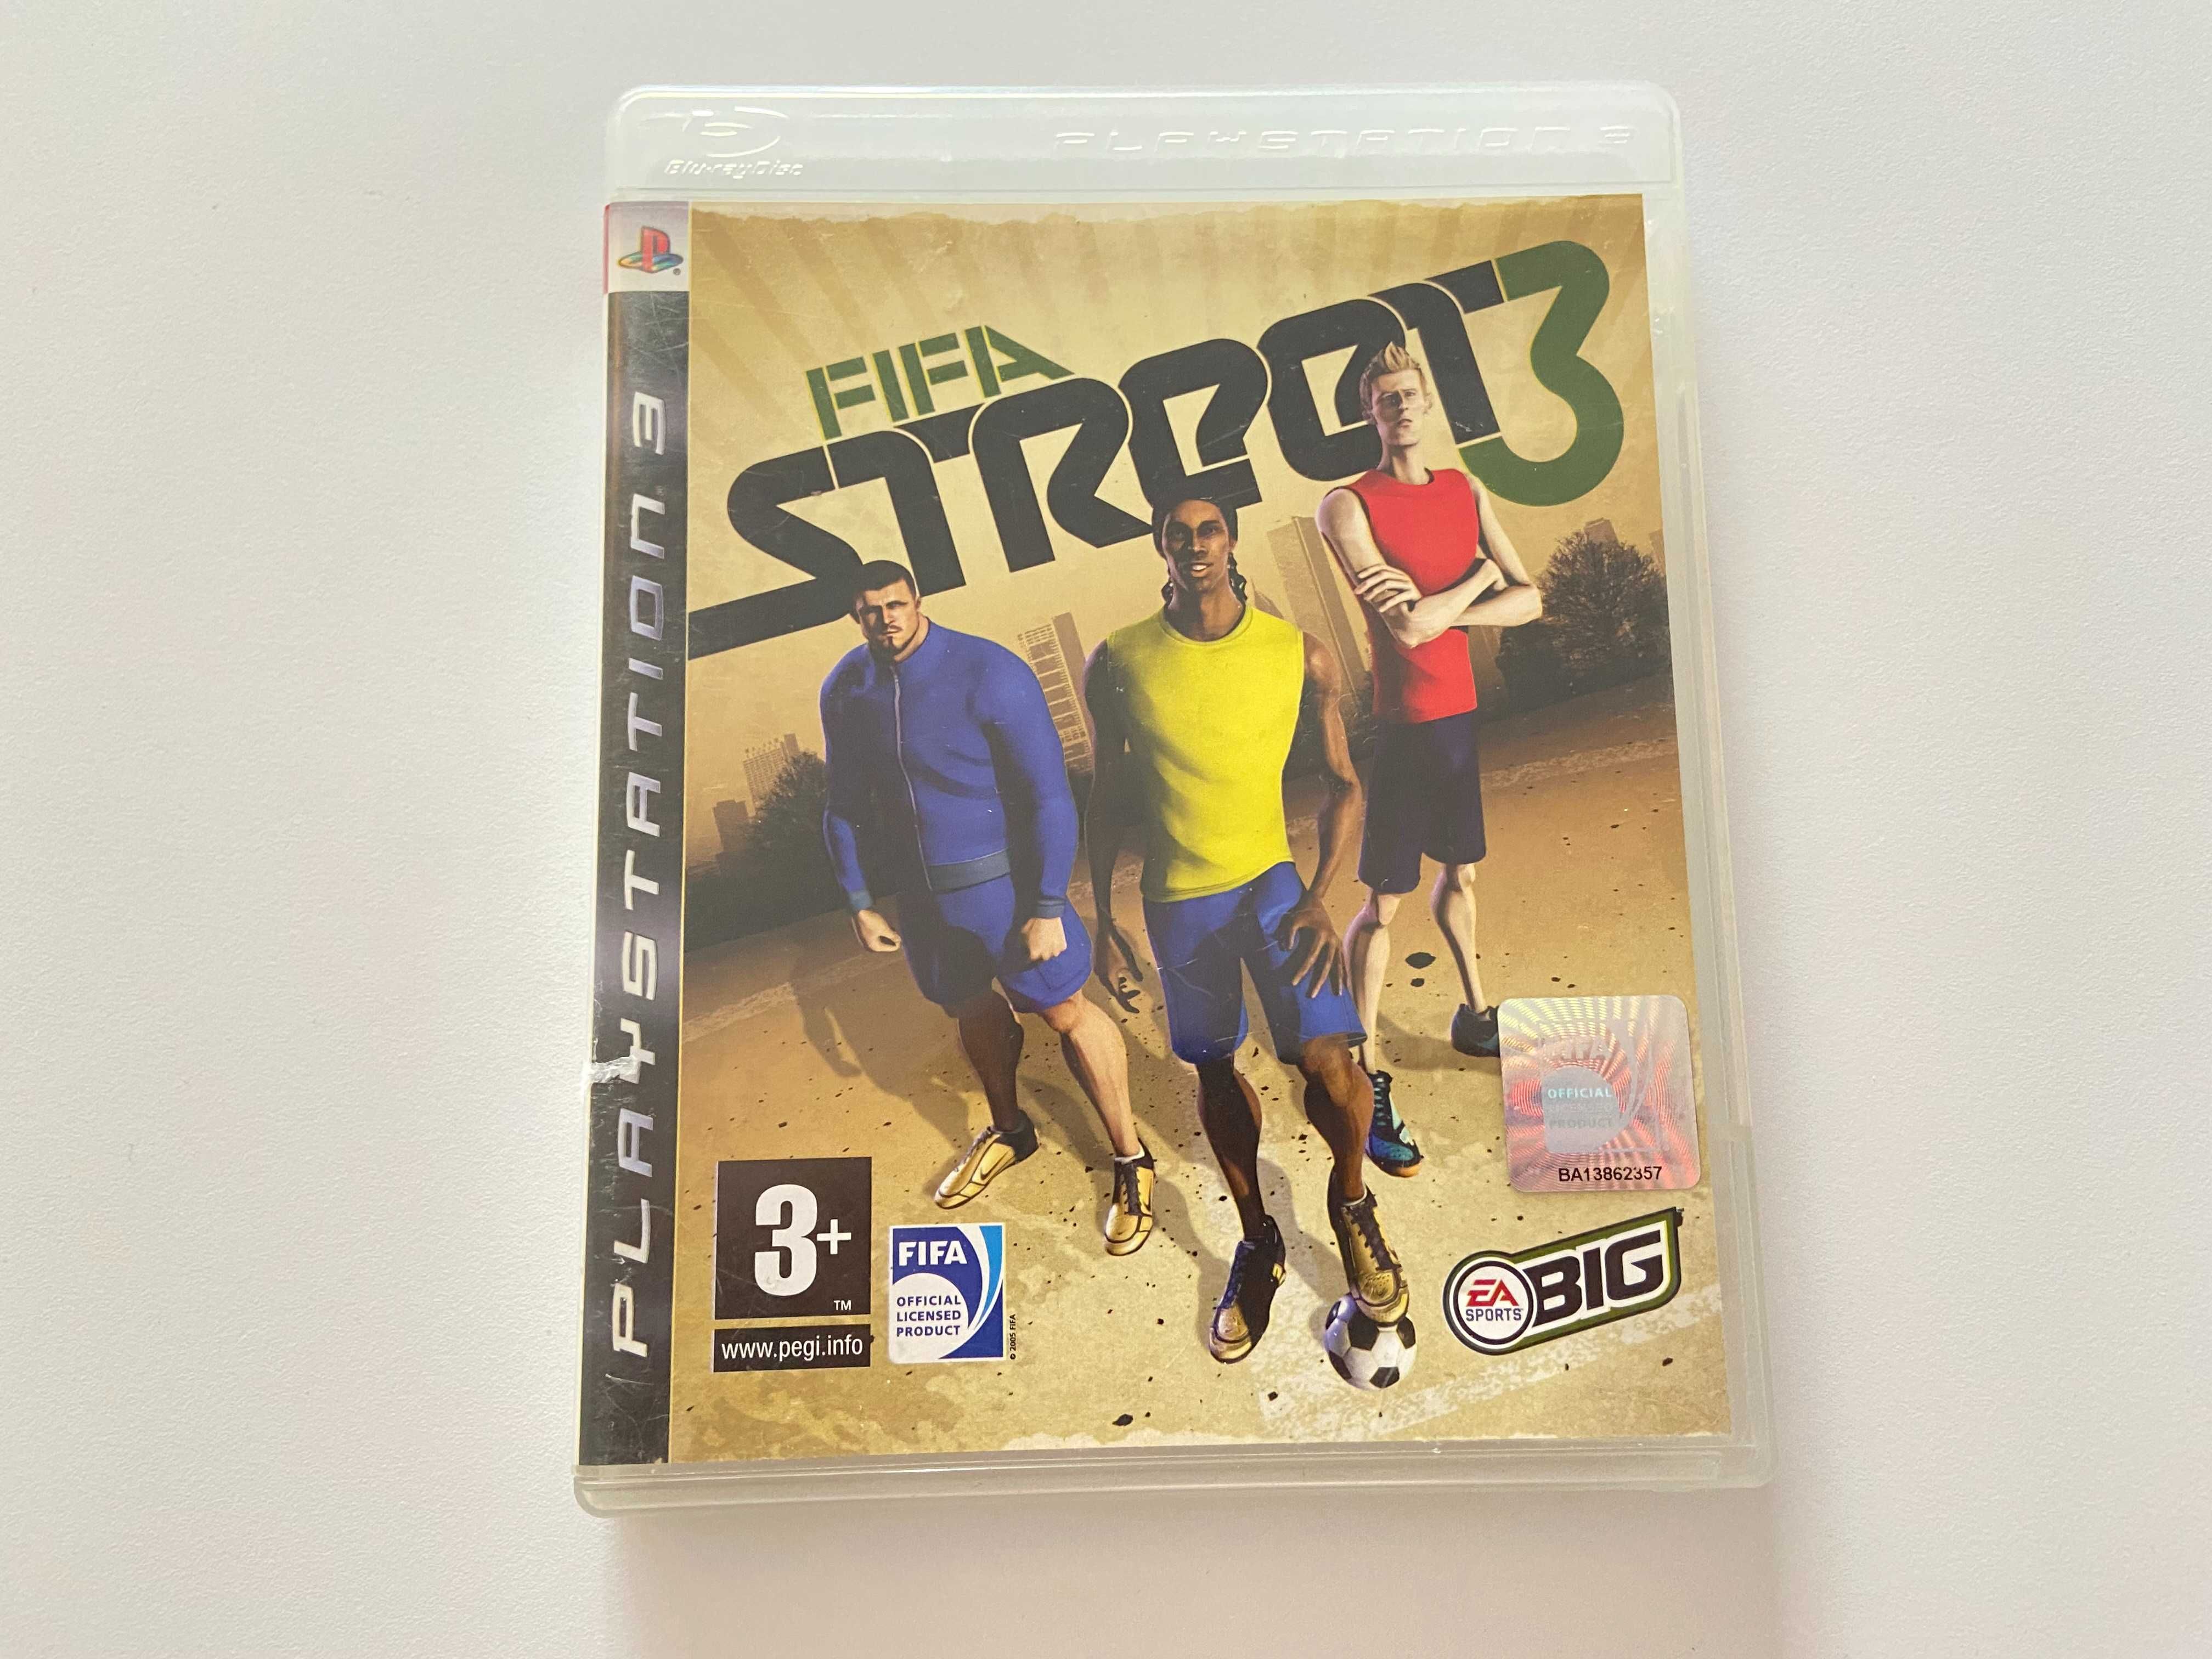 Fifa Street 3 PS3 Gra Playstation 3 Sony